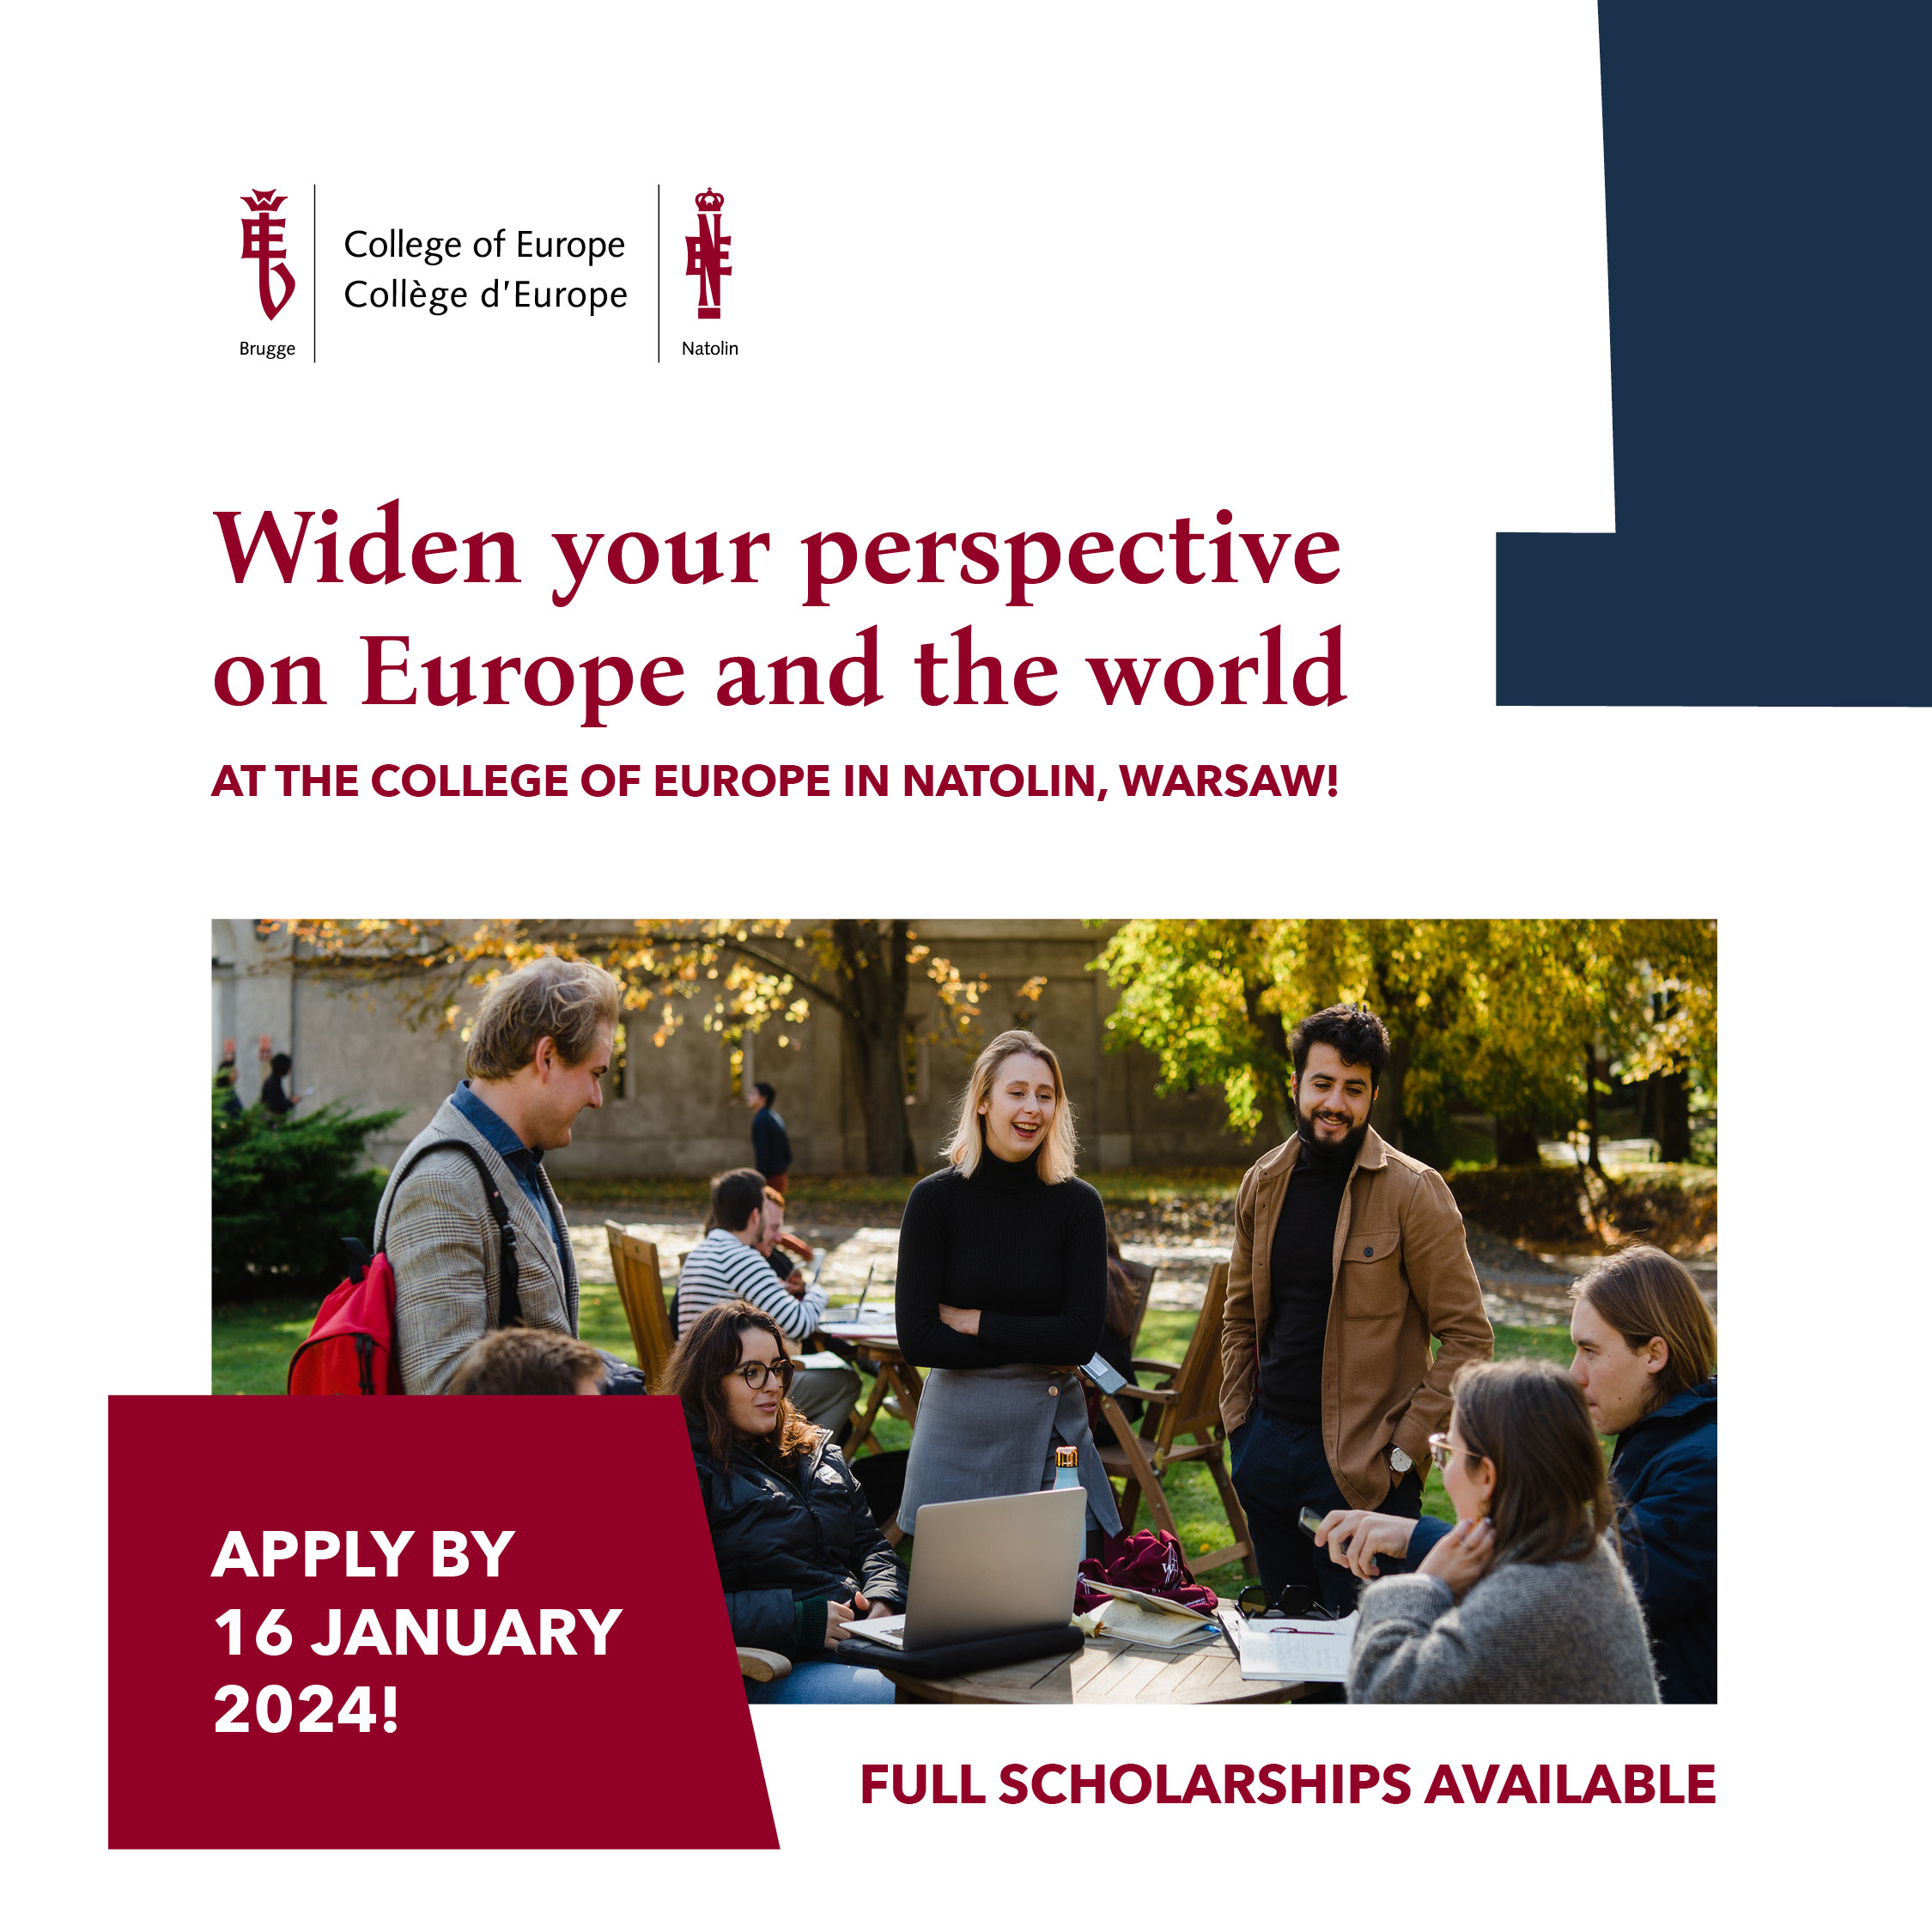 Stypendia rządowe i europejskie na studia w College of Europe